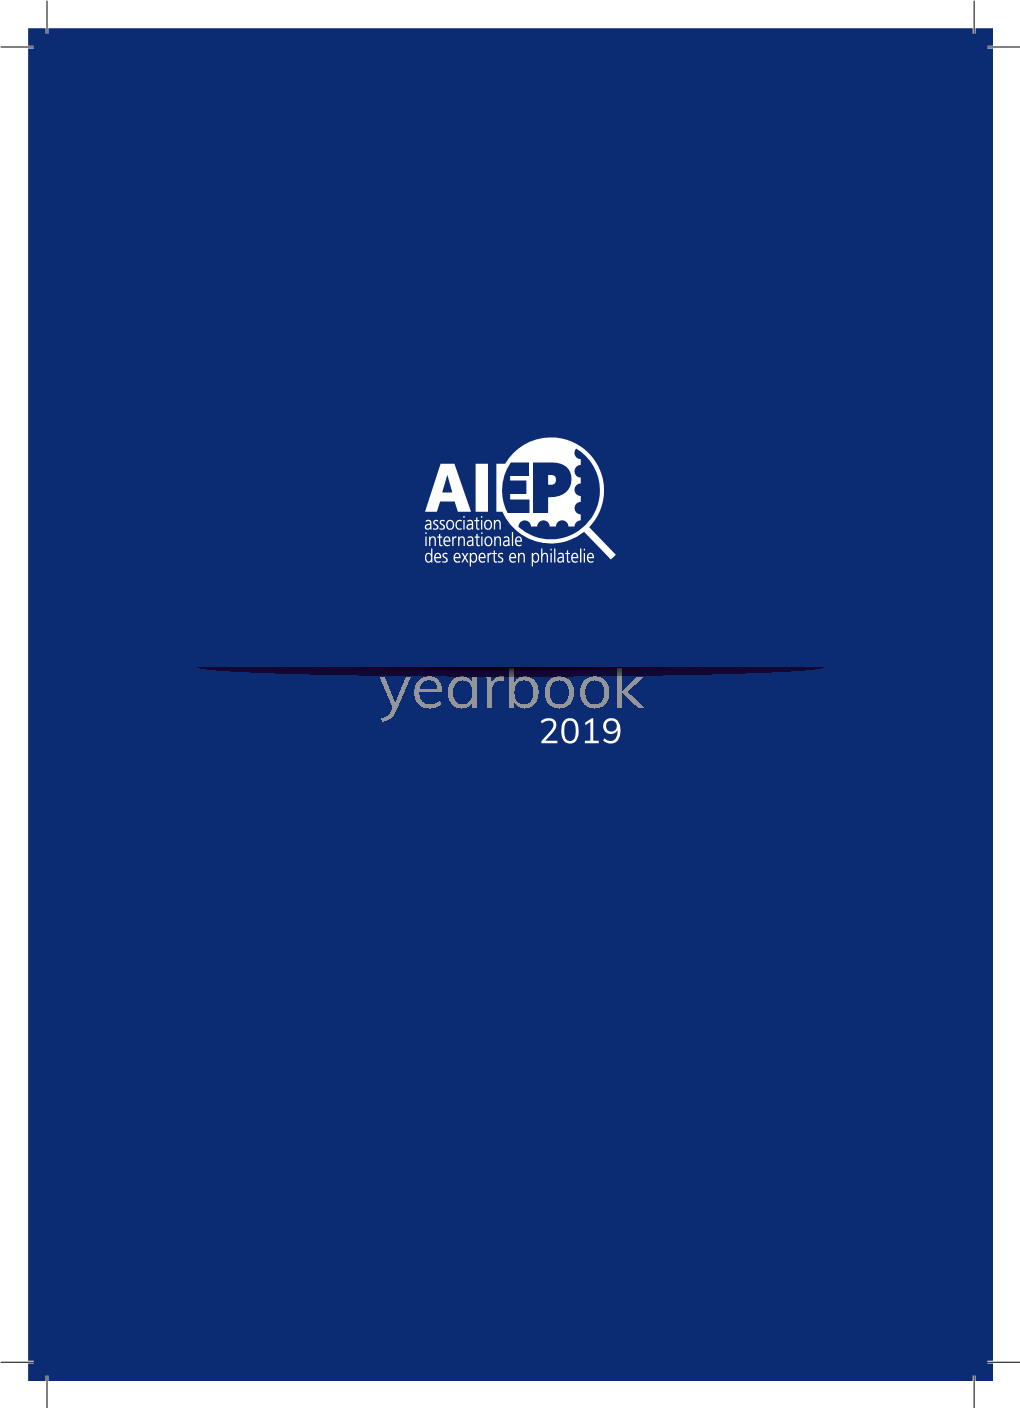 AIEP Yearbook 2019 Final Version